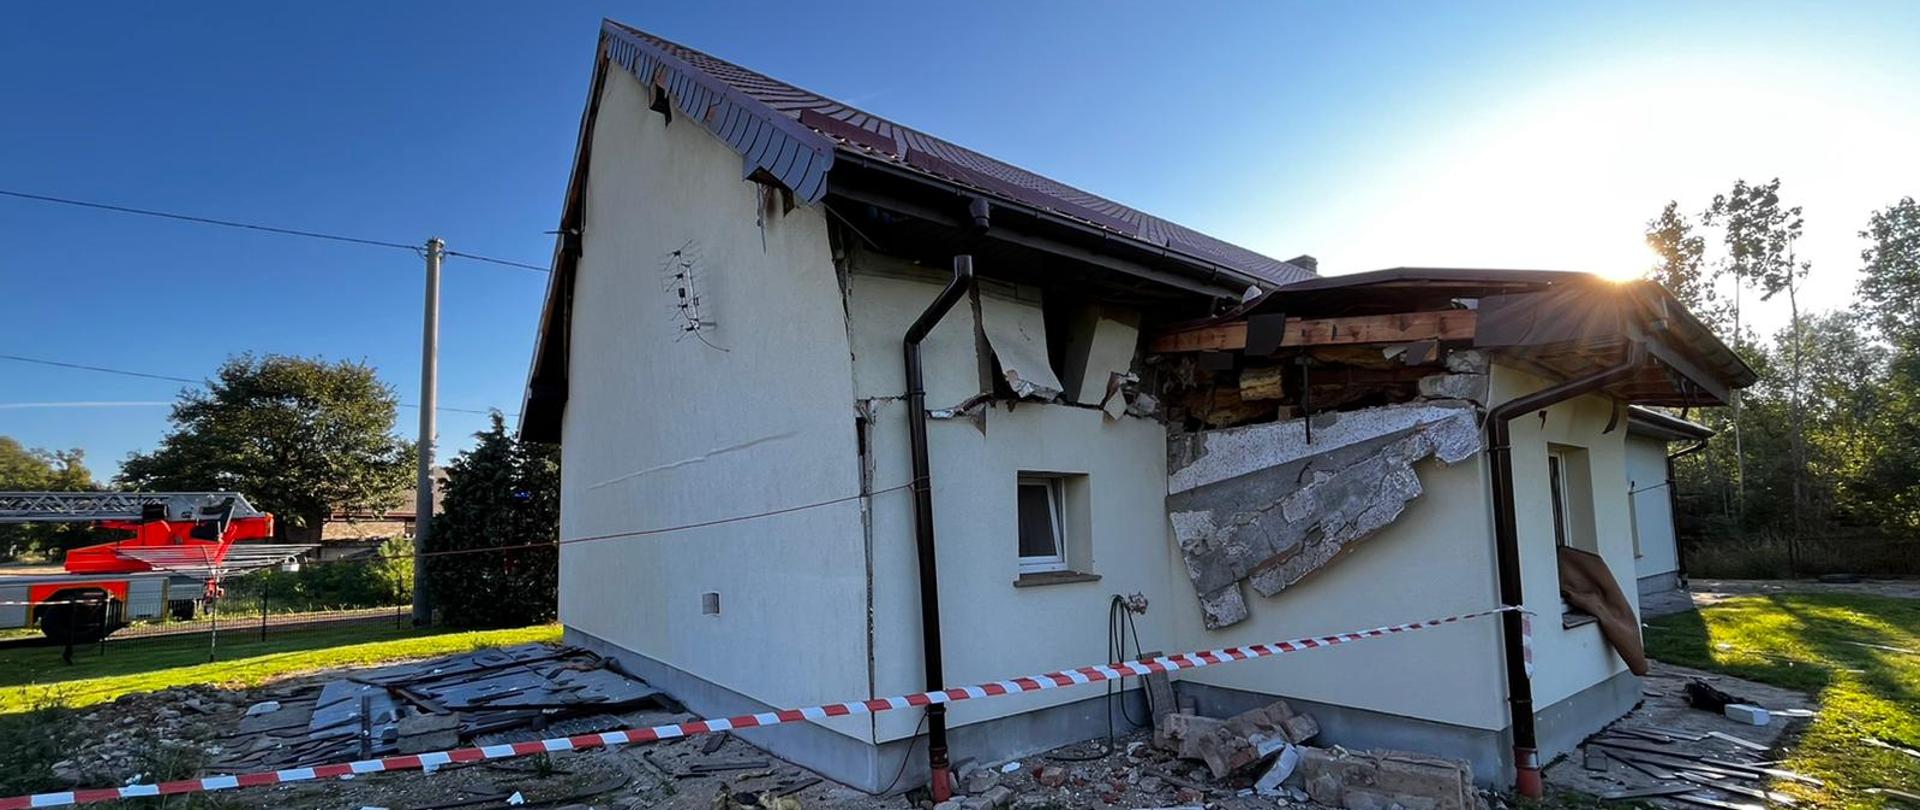 Zdjęcie przedstawia zniszczony dom jednorodzinny po wybuchu gazu wewnątrz obiektu. W tle widoczna drabina mechaniczna.